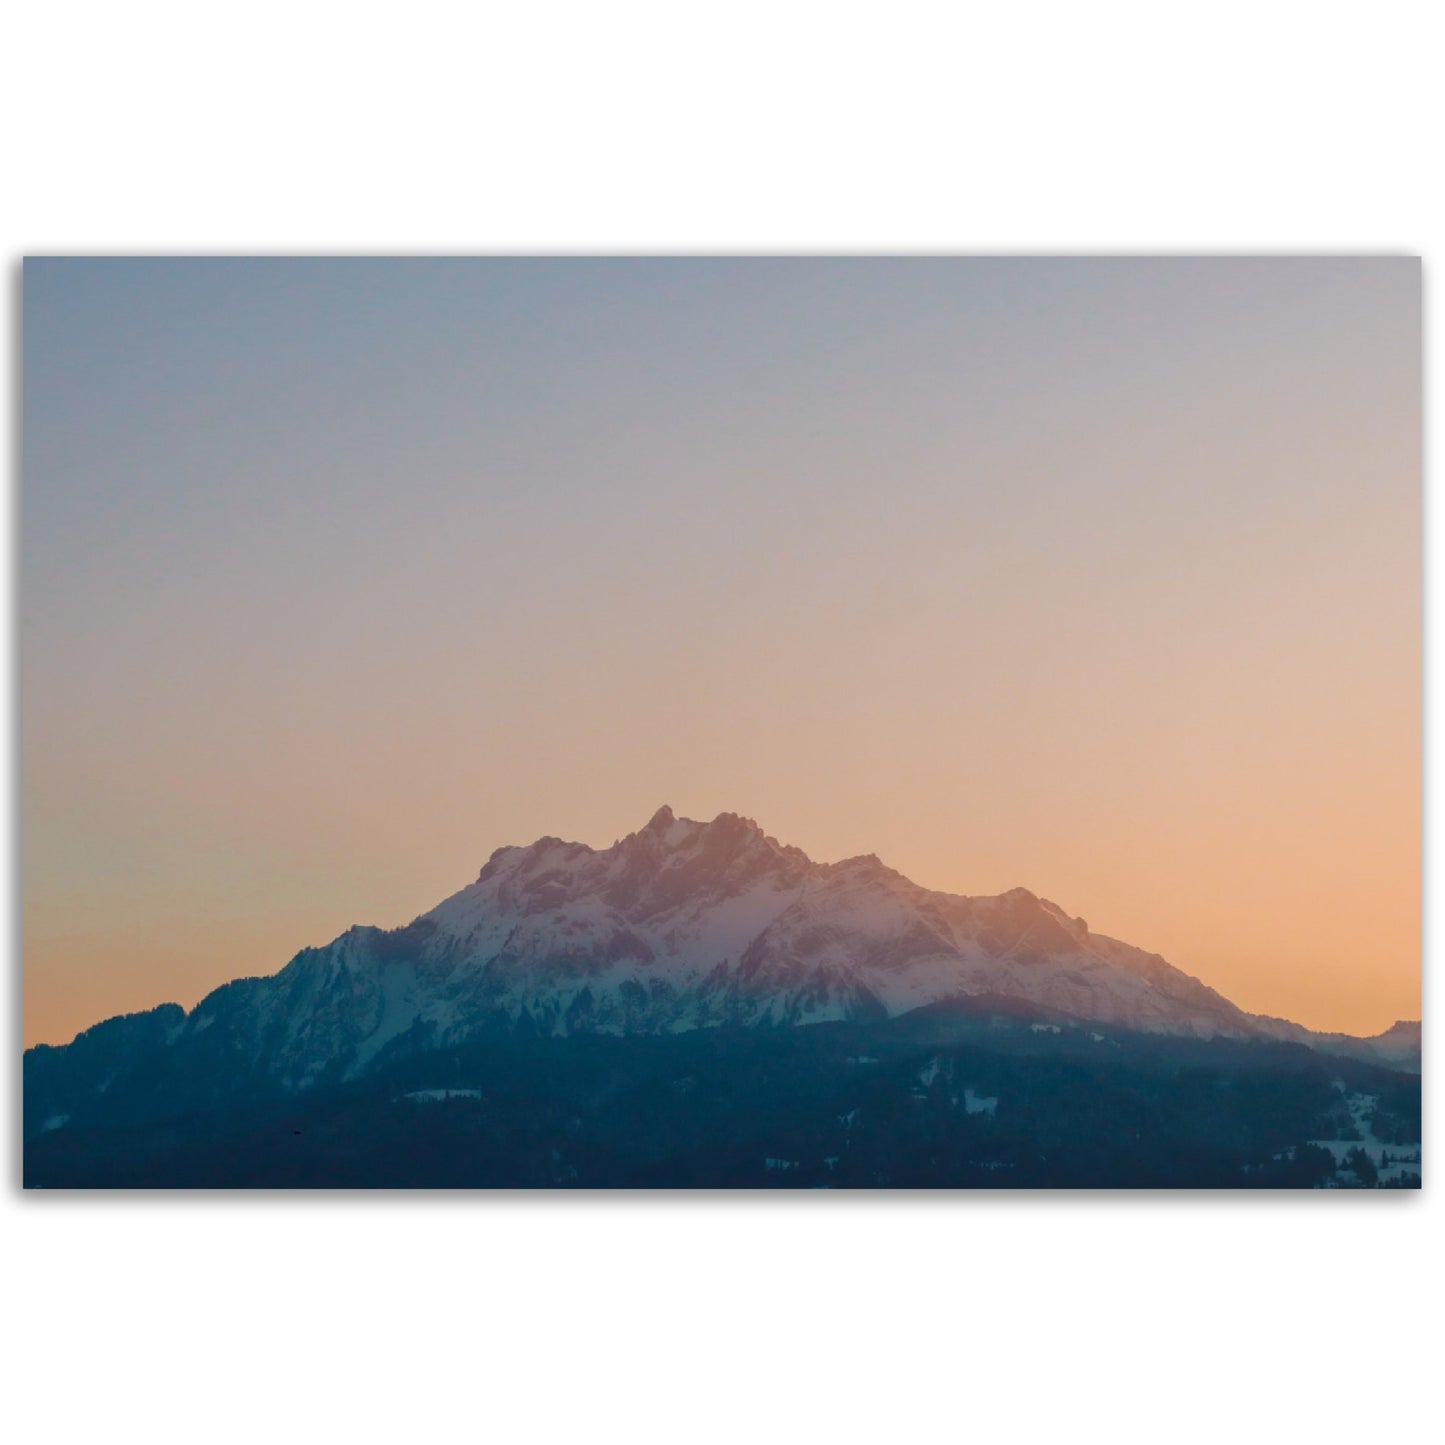 Schweizer Alpenzauber: Pilatus bei Sonnenuntergang - Forex-Druck